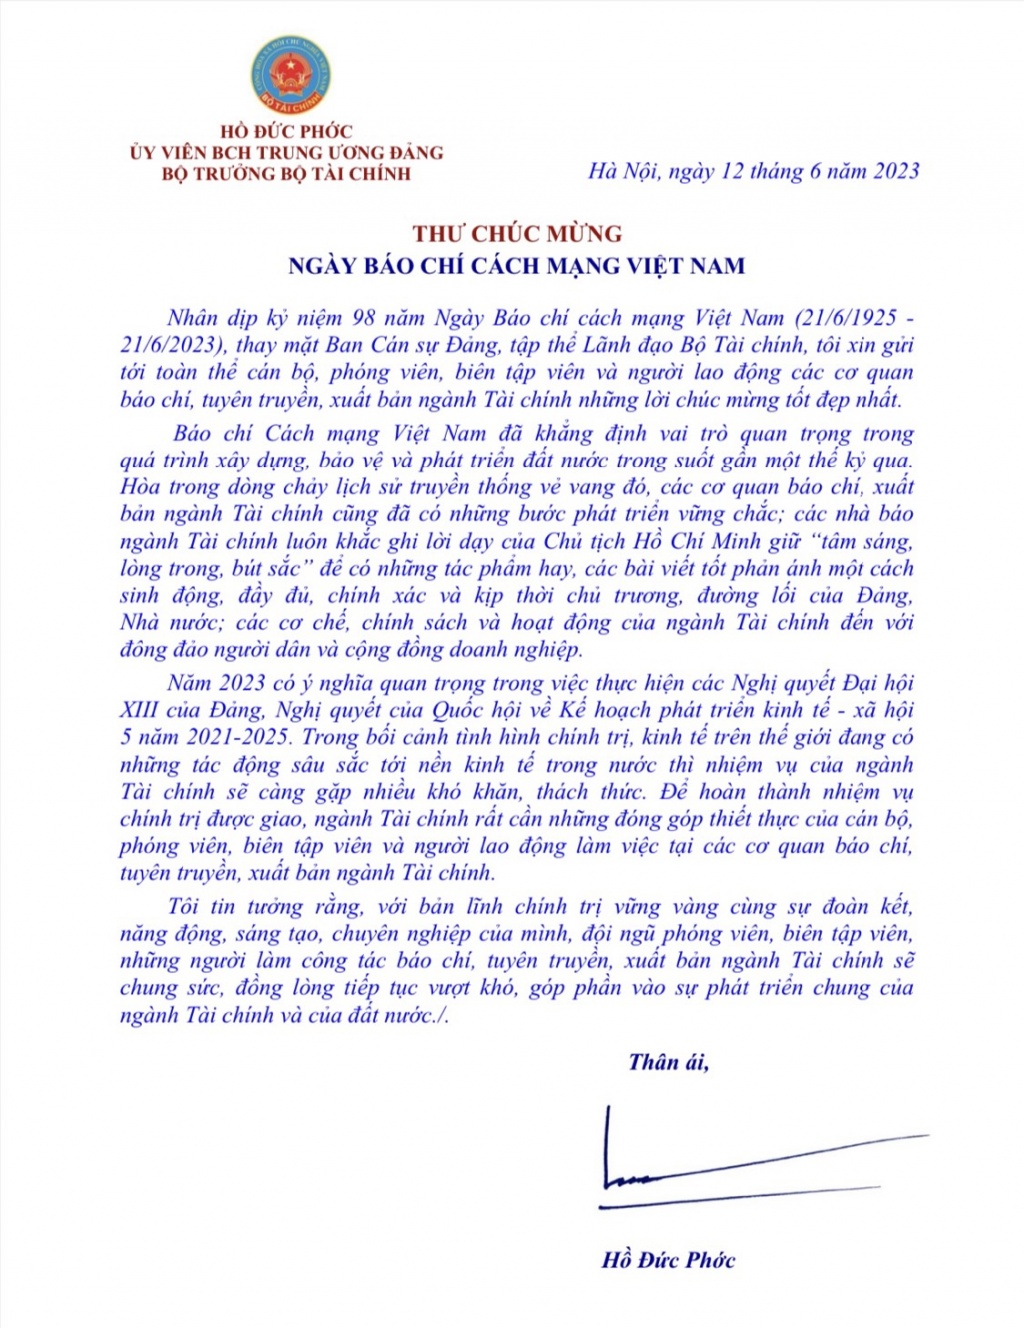 Bộ trưởng Bộ Tài chính gửi thư chúc mừng ngày Báo chí cách mạng Việt Nam